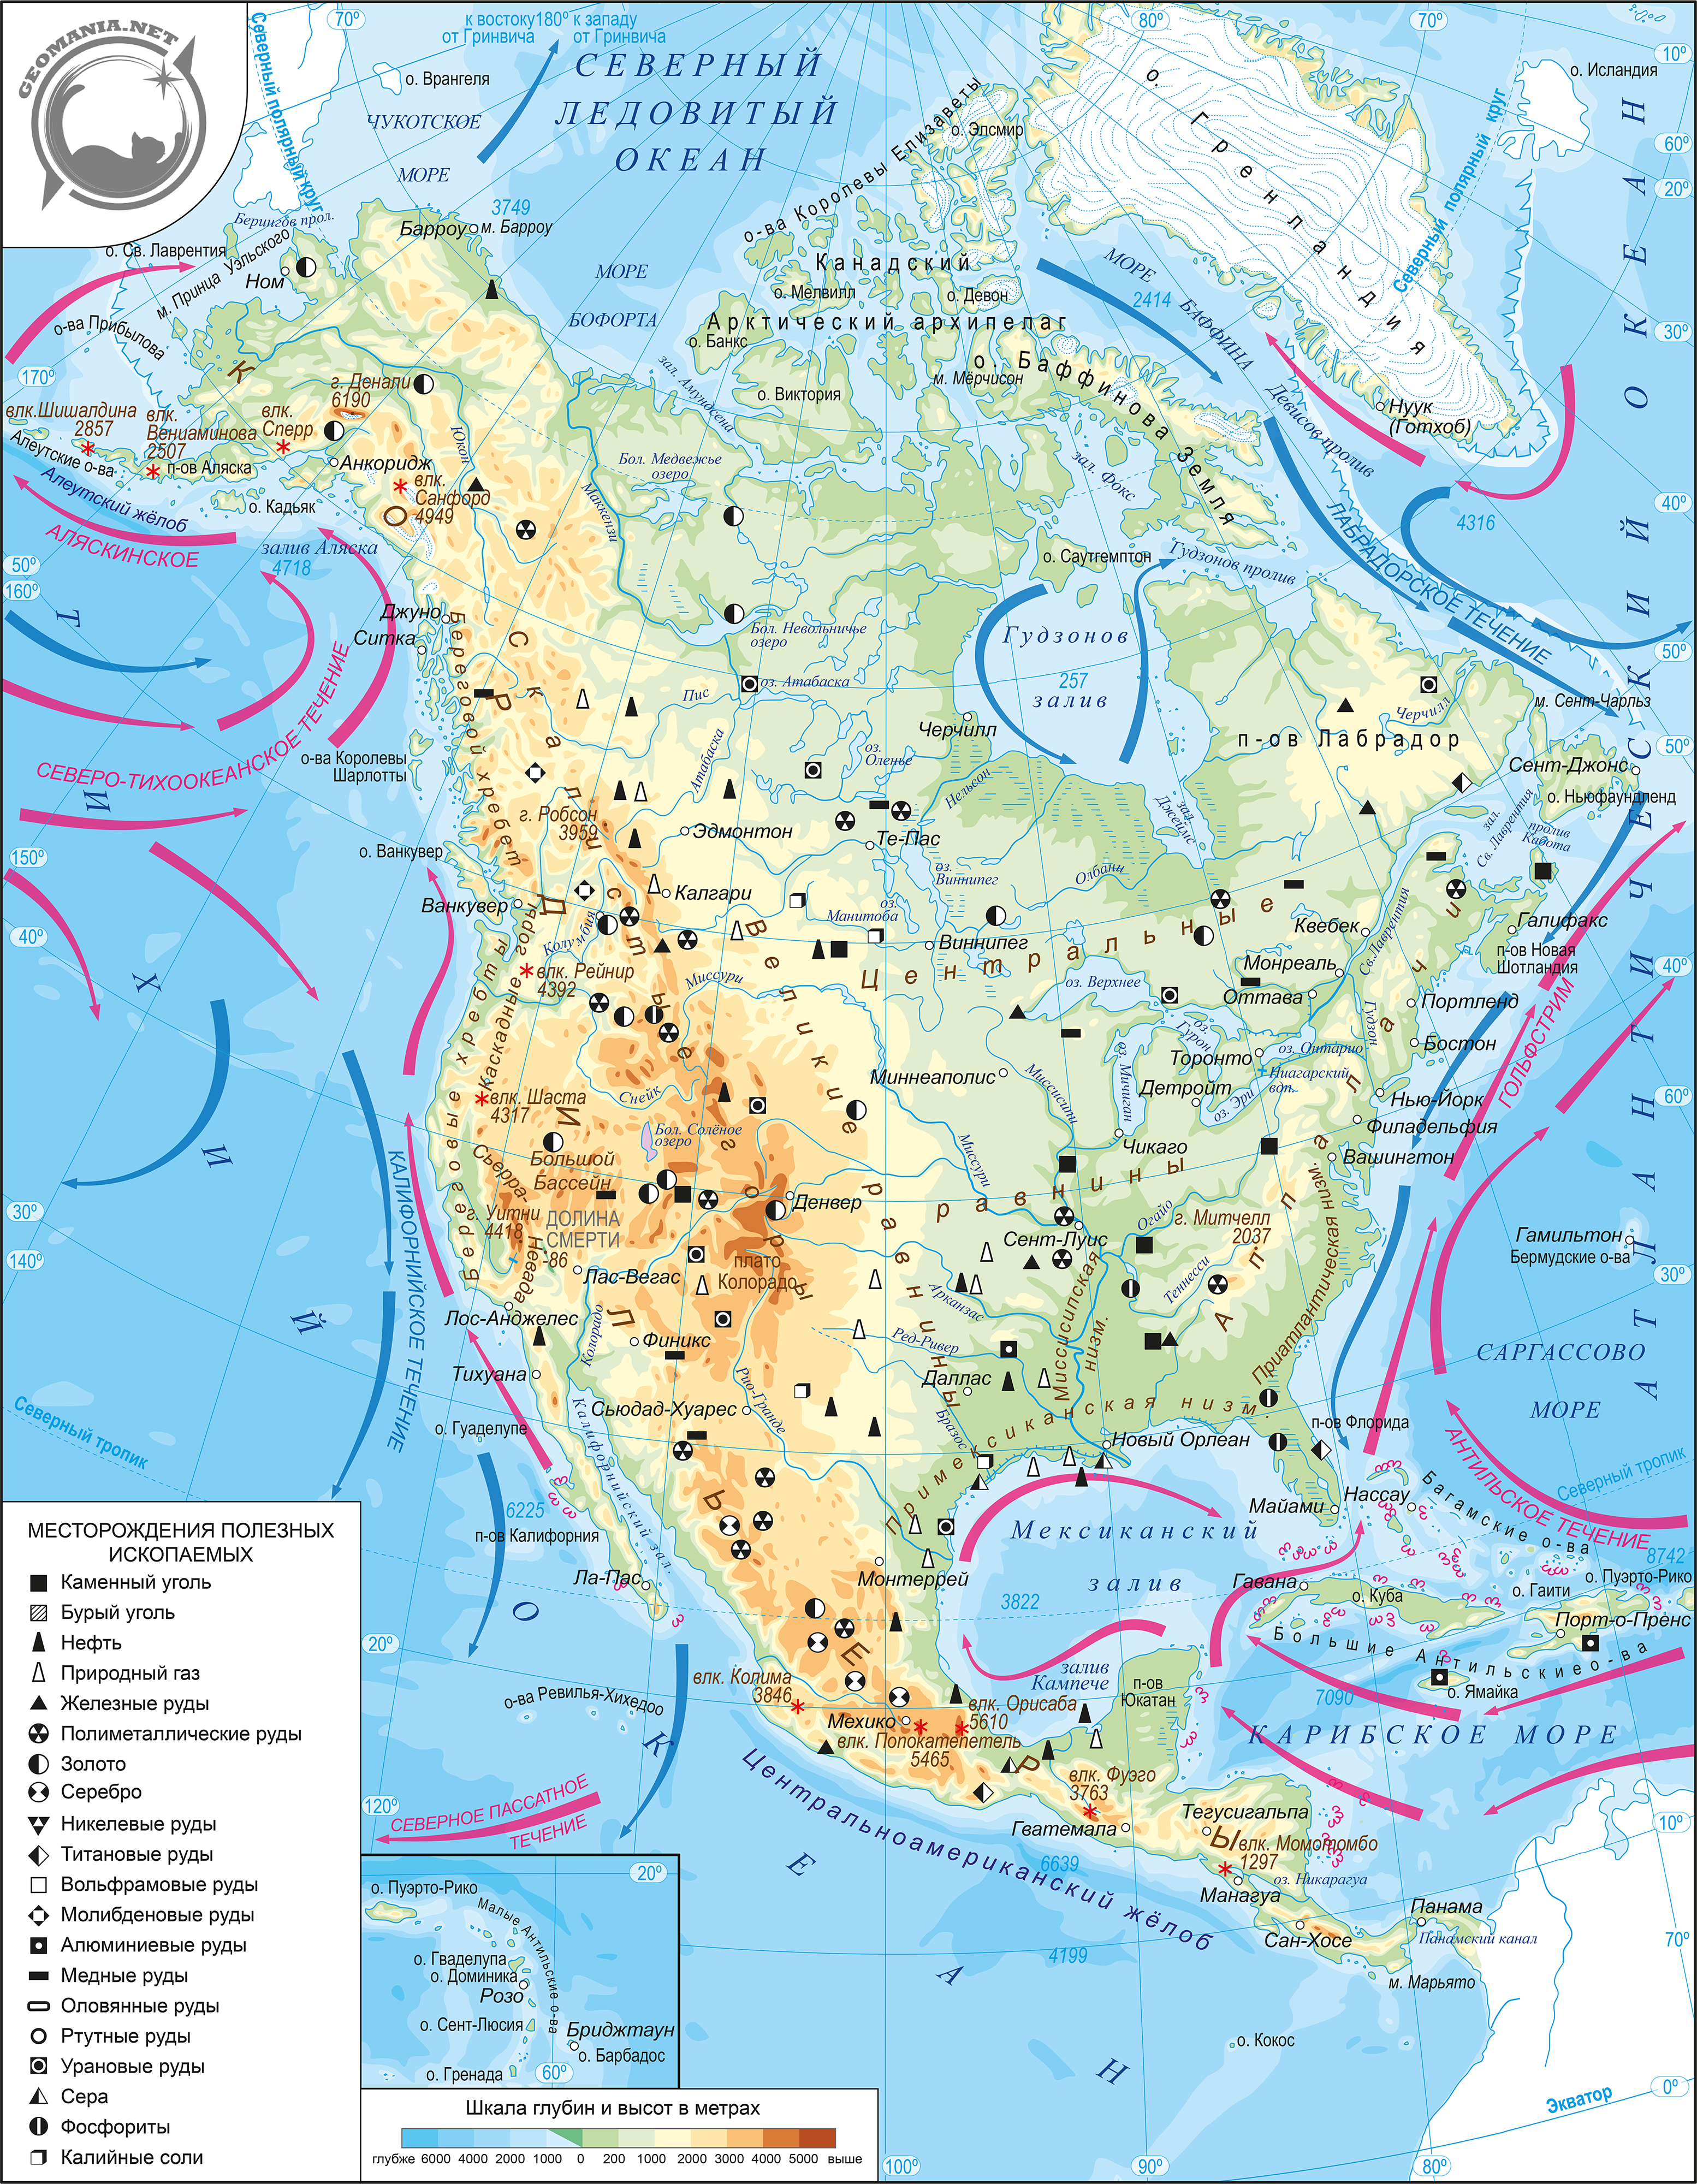 Практическая работа северная америка 7. Физическая карта Северной Америки атлас. Карта Северной Америки 7 класс география атлас. География атлас 7 класс физическая Северная Америка. Карта Северной Америки географическая крупная.